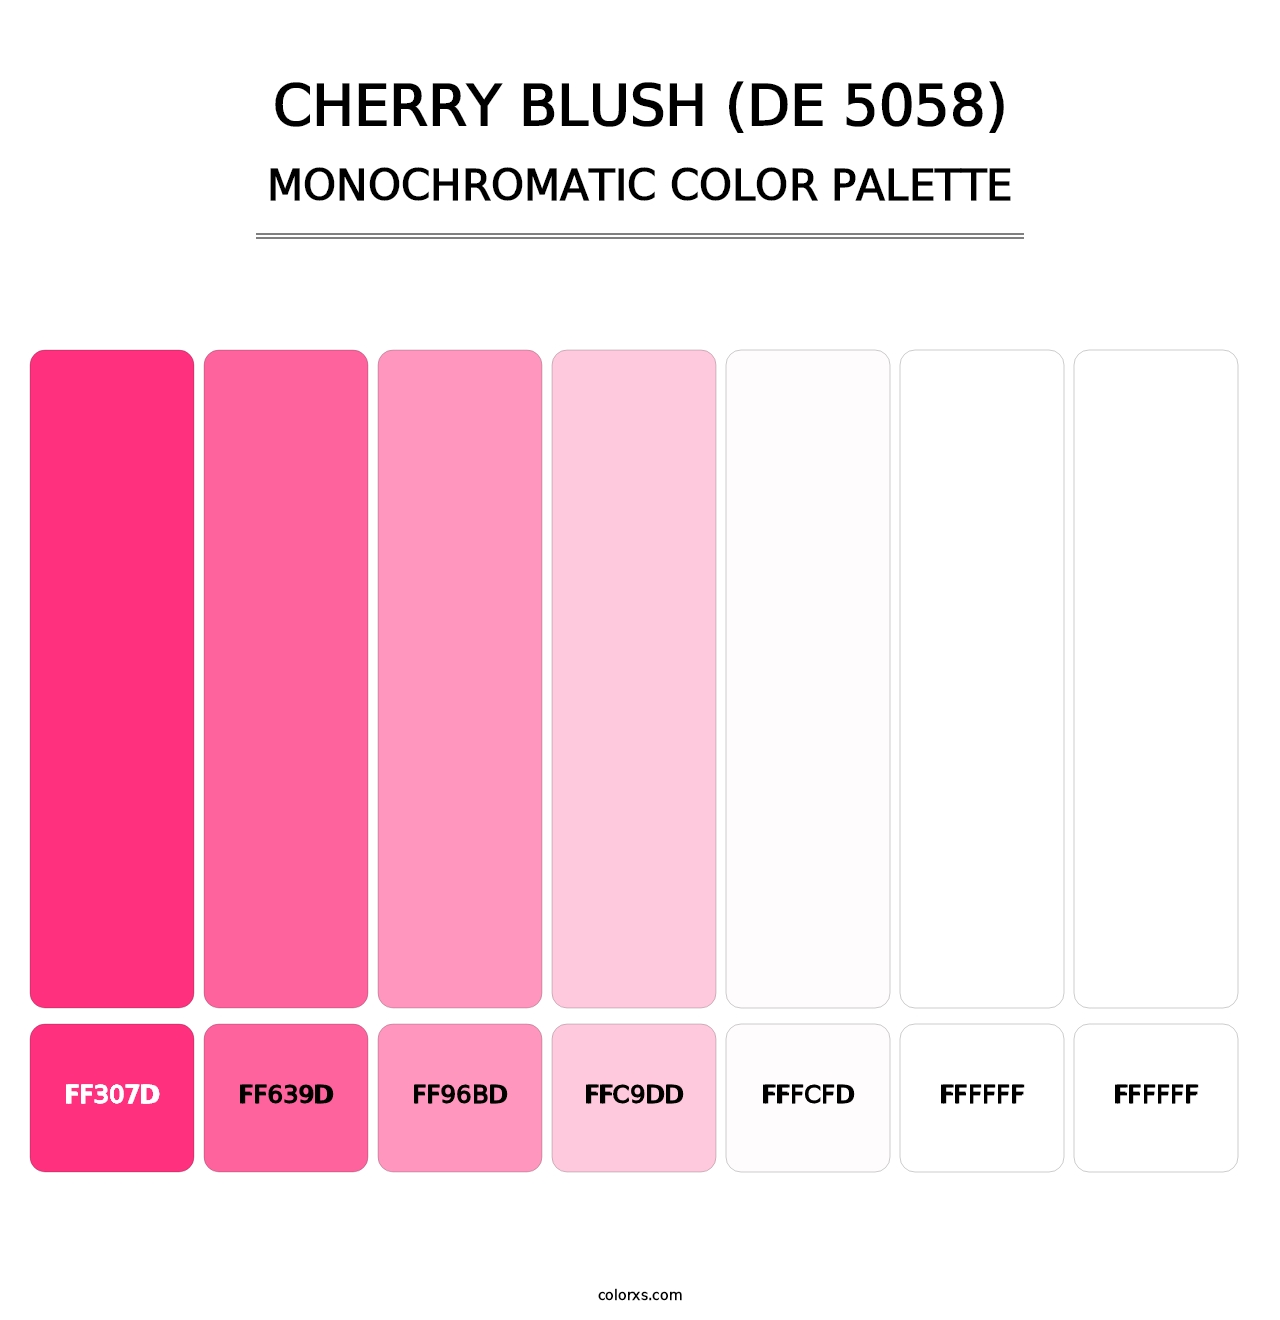 Cherry Blush (DE 5058) - Monochromatic Color Palette